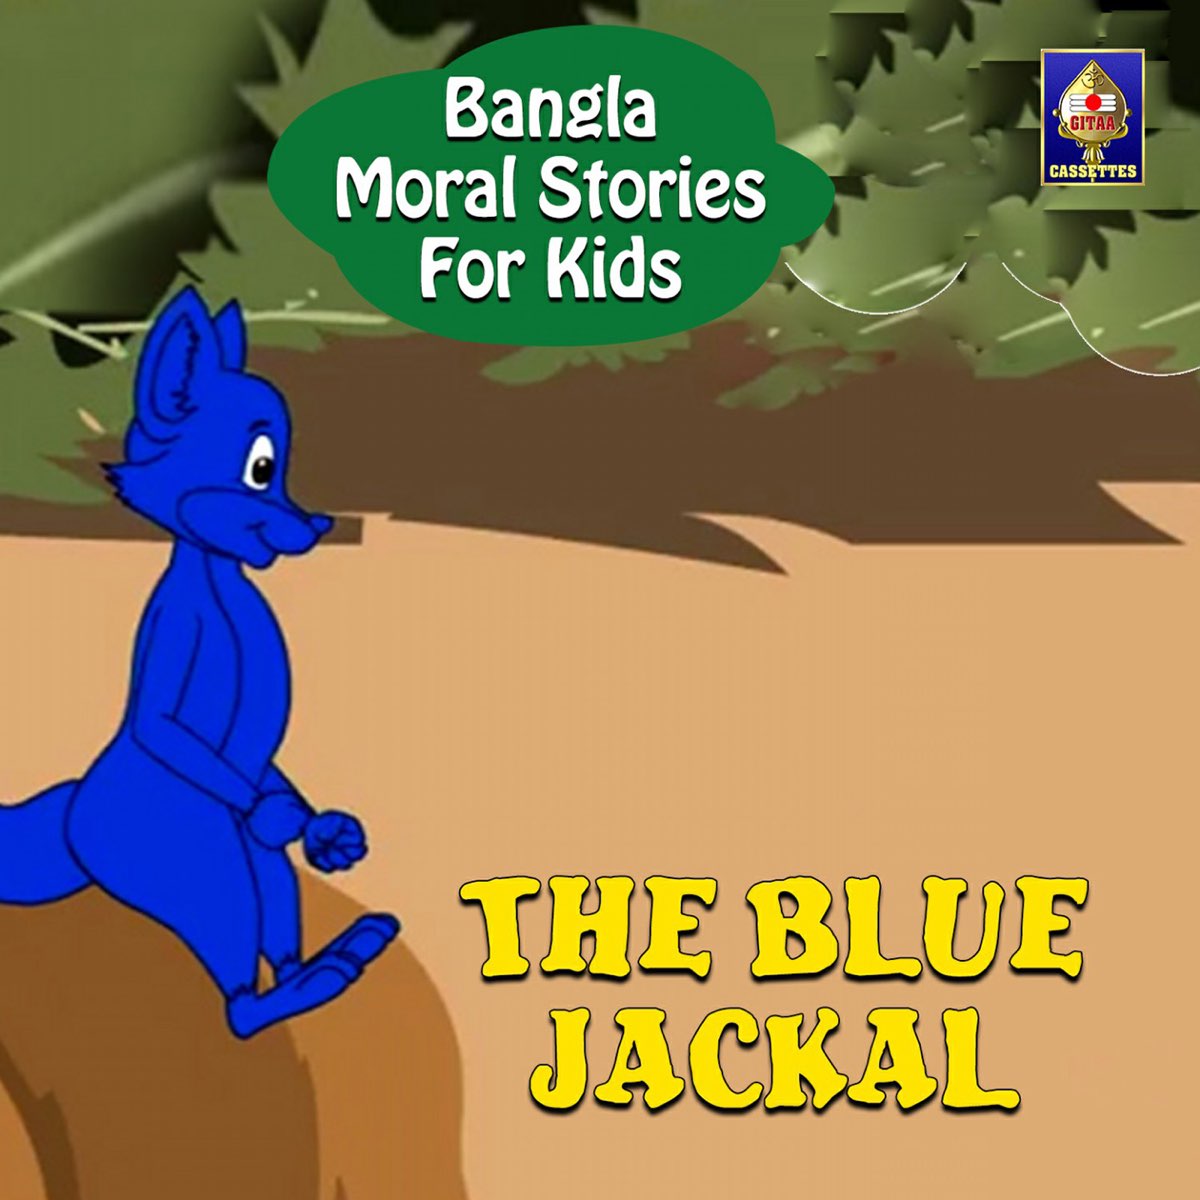 Bangla Moral Stories For Kids - The Blue Jackal - Single by Jagyaseni  Chatterjee on Apple Music